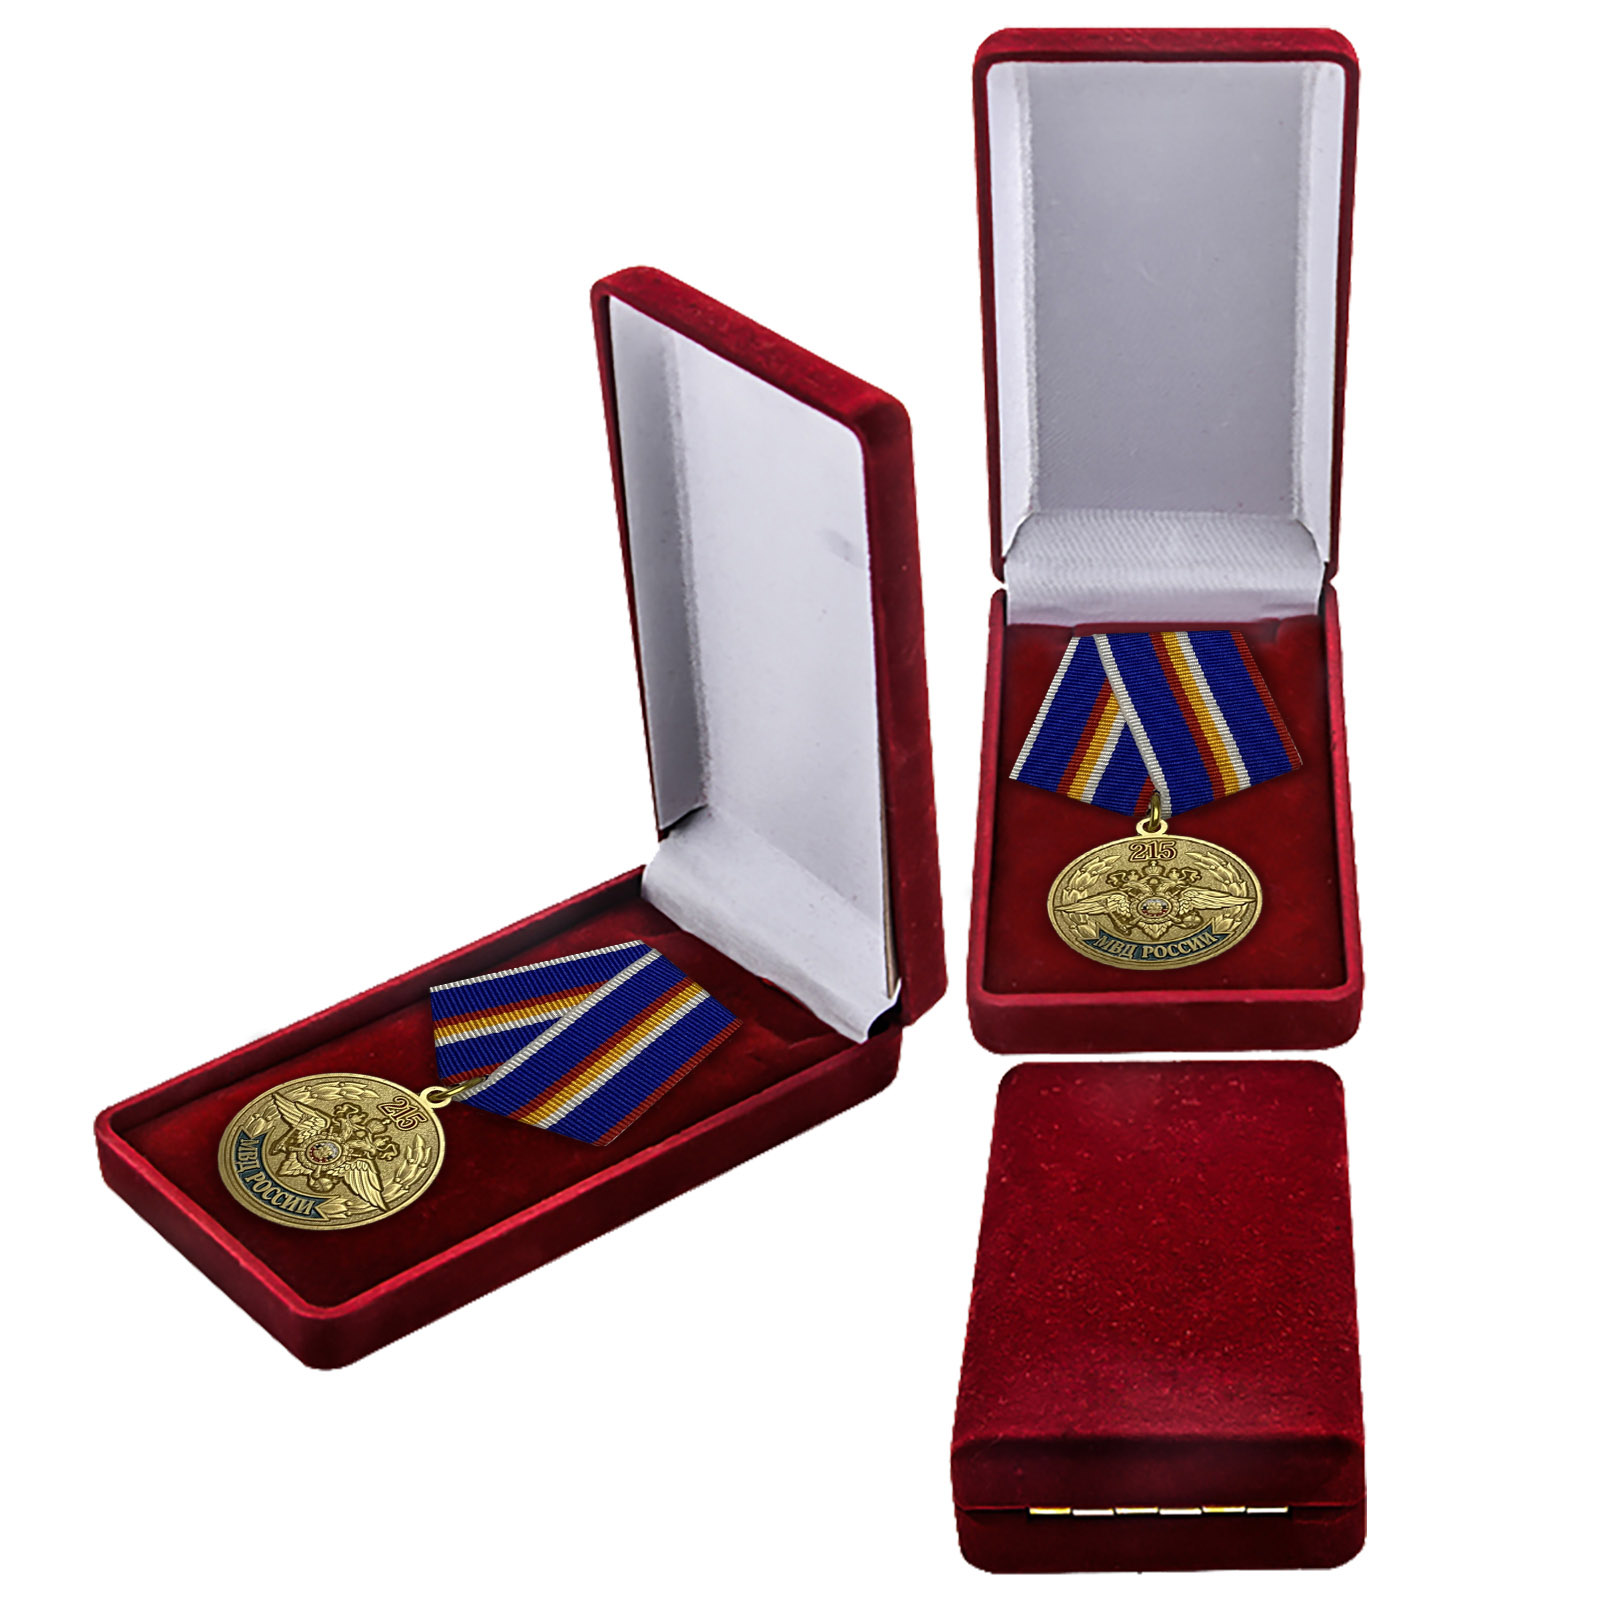 Купить юбилейную медаль 215 лет МВД России онлайн выгодно